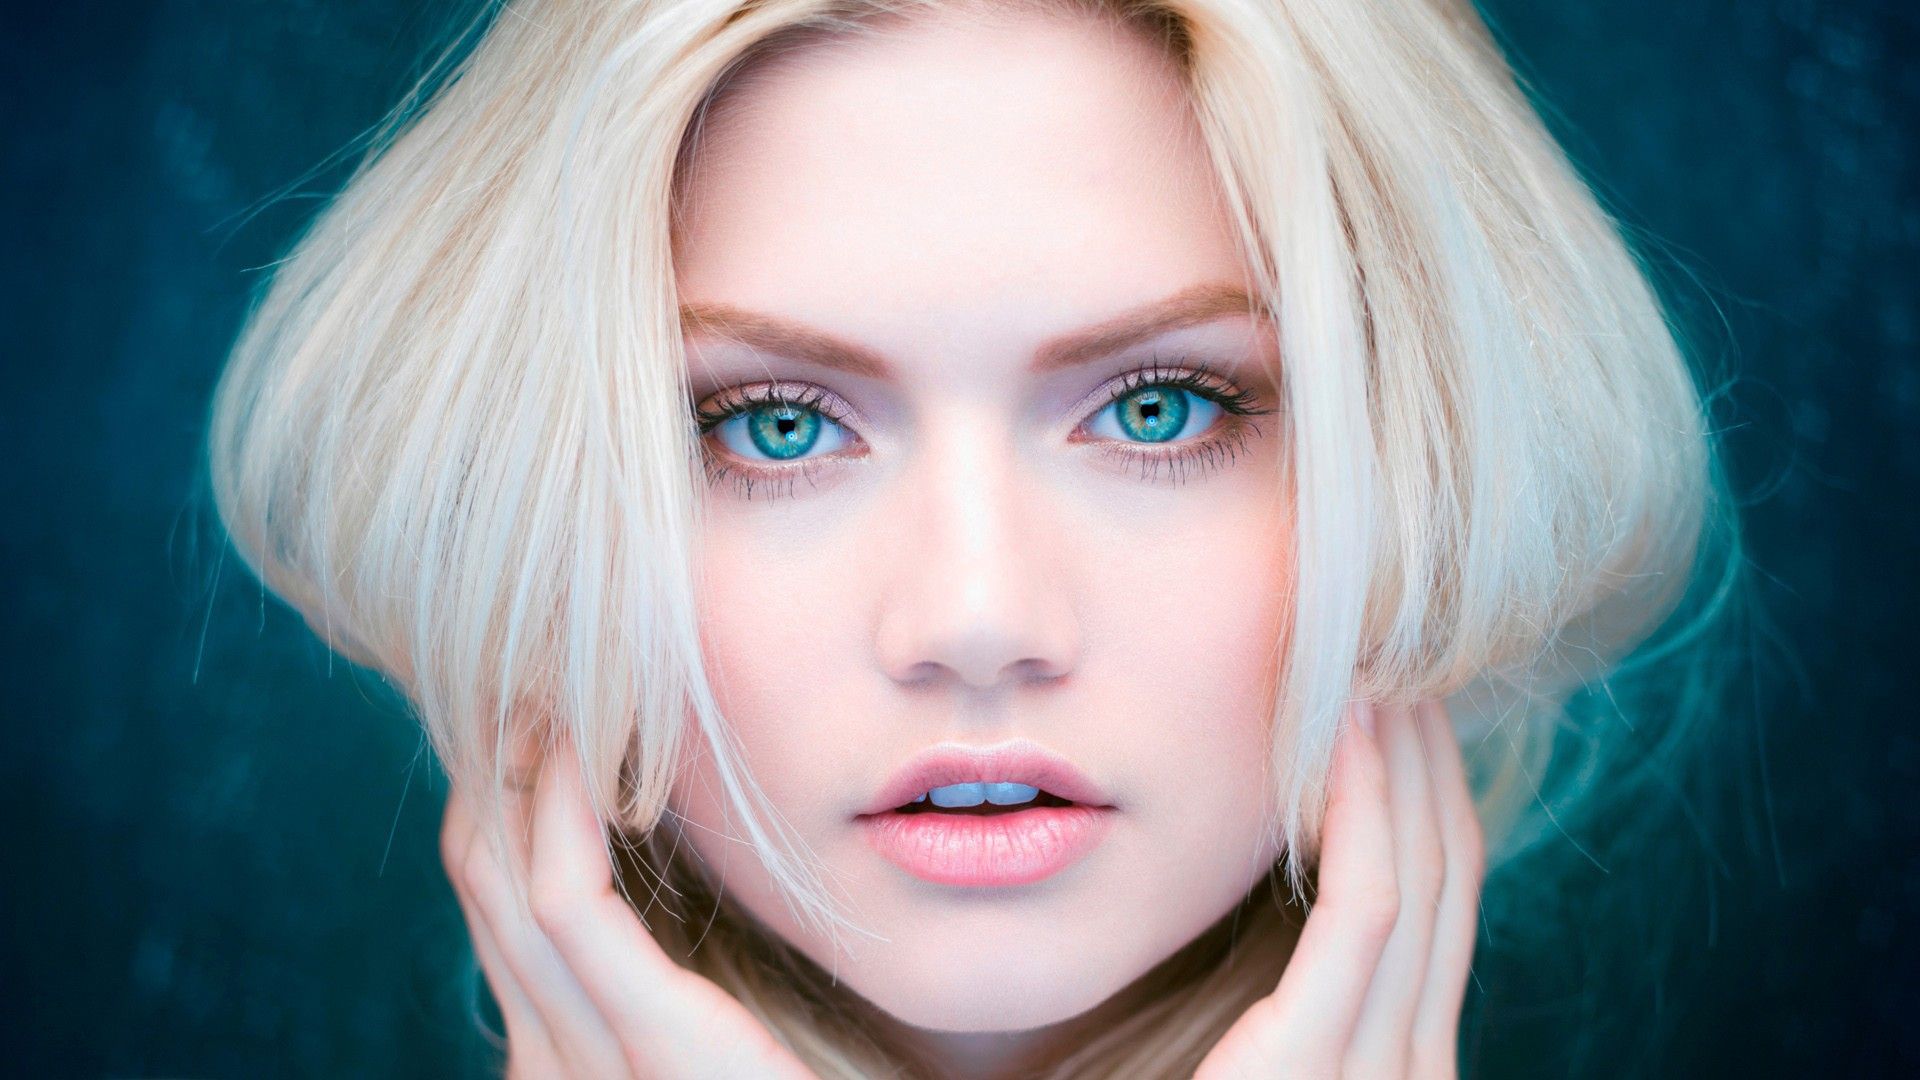 Beautiful Eyes Blonde Girl, HD Girls, 4k Wallpaper, Image